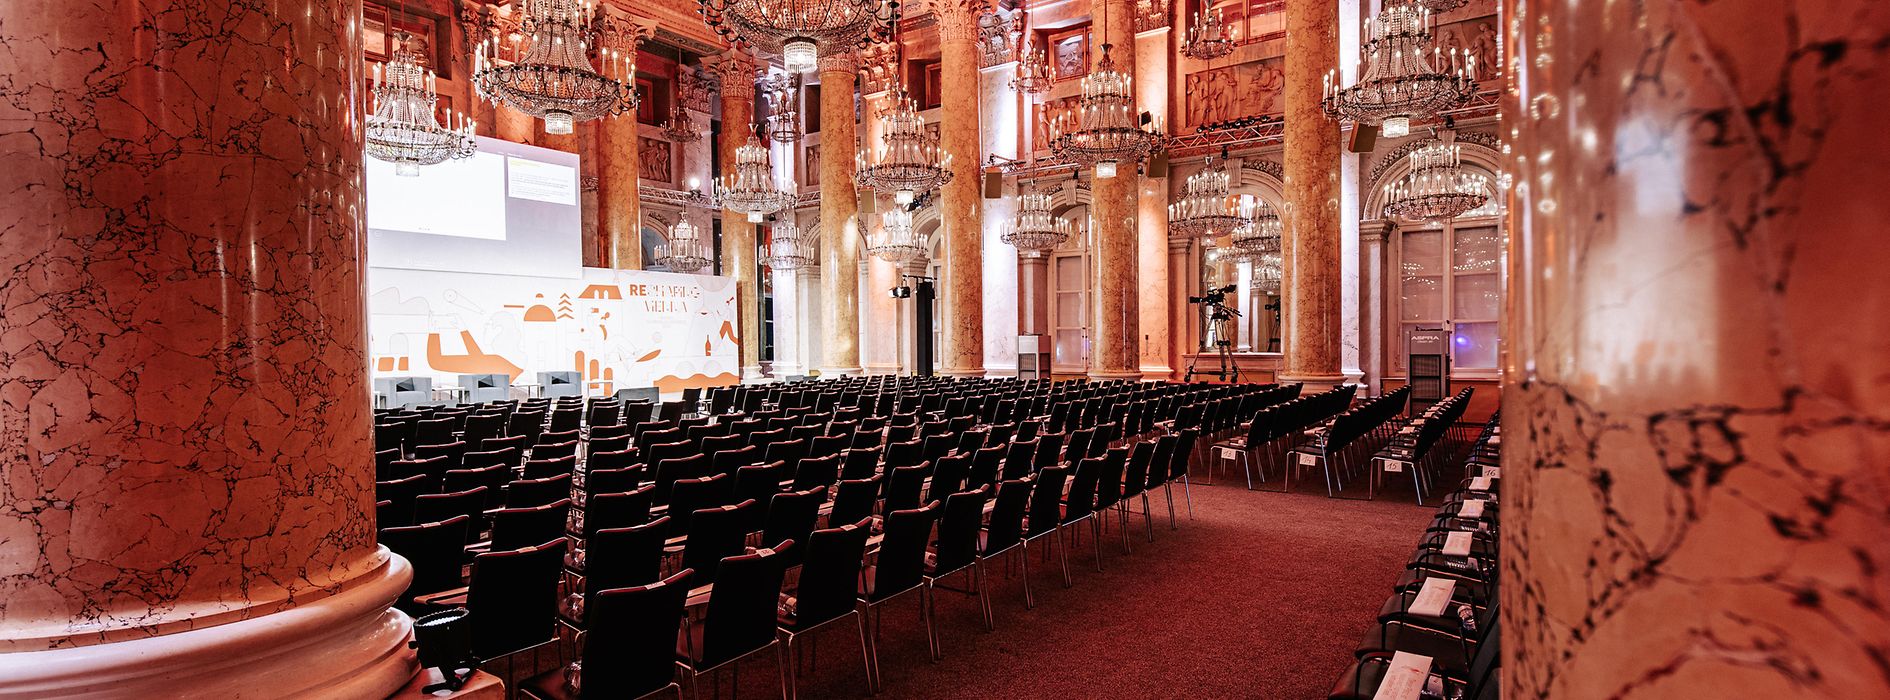 Zeremoniensaal der Hofburg Vienna - Corona-konforme Veranstaltung